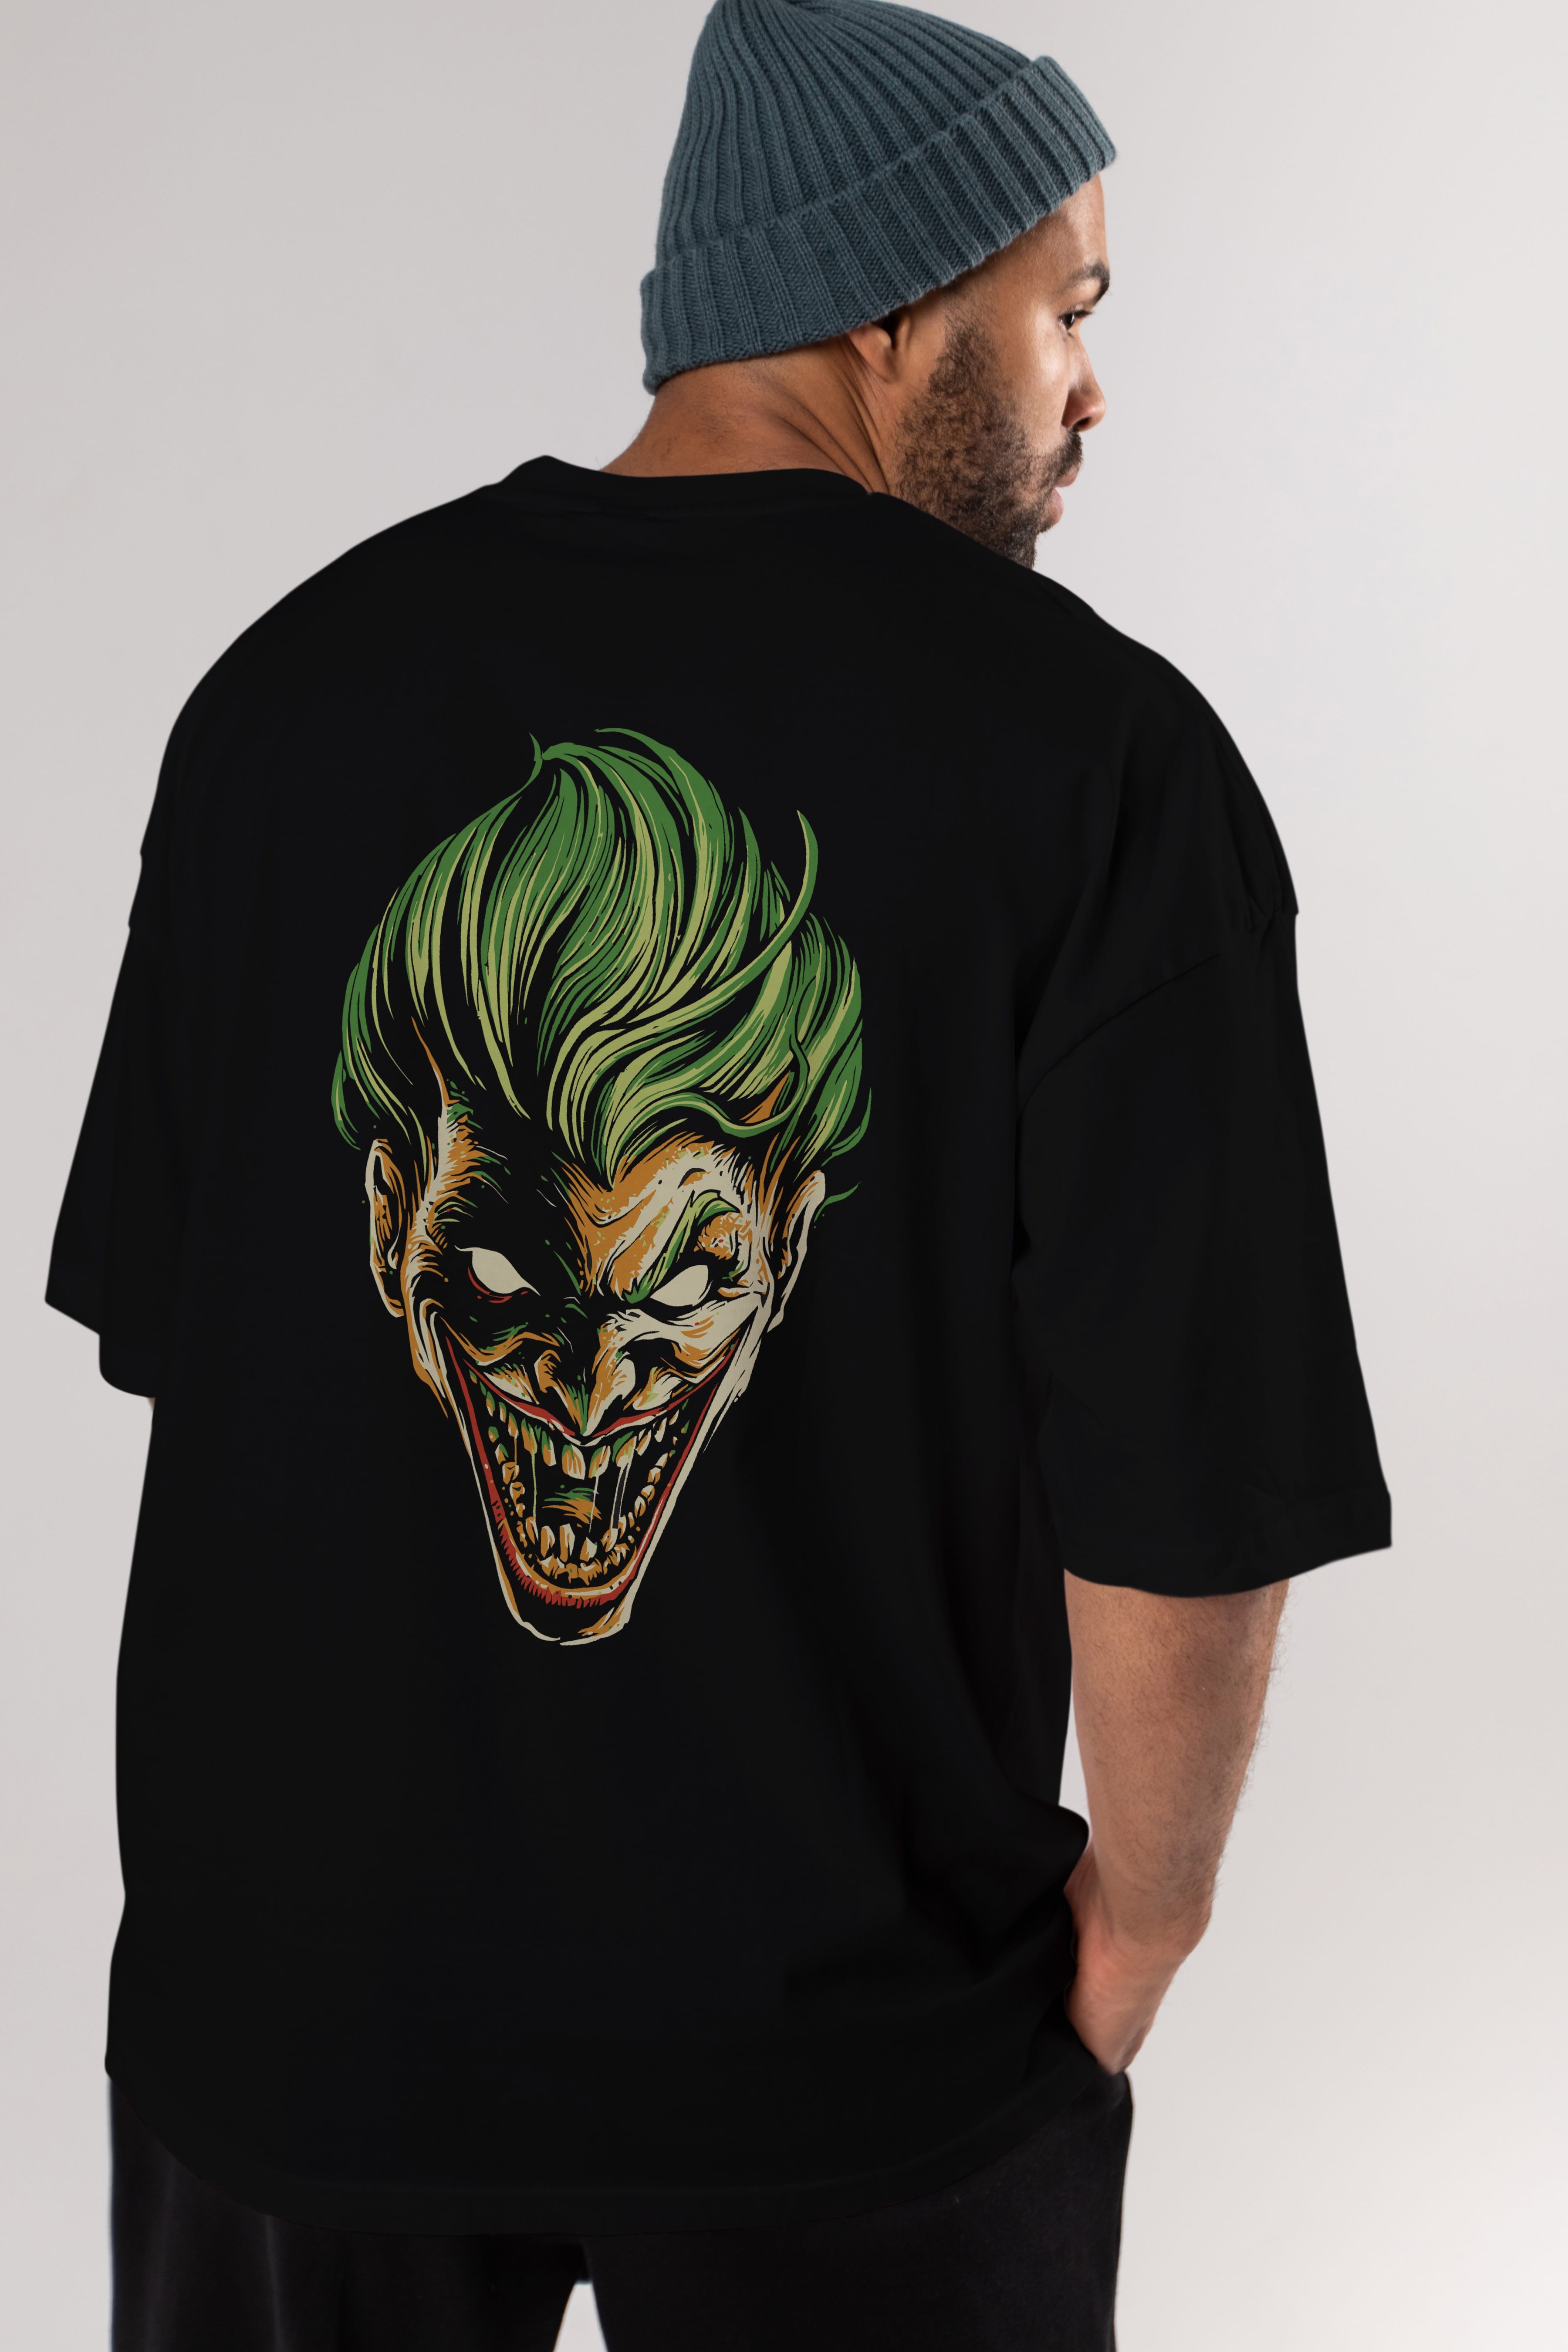 Joker (3) Arka Baskılı Oversize t-shirt Erkek Kadın Unisex %100 Pamuk Bisiklet Yaka tişort